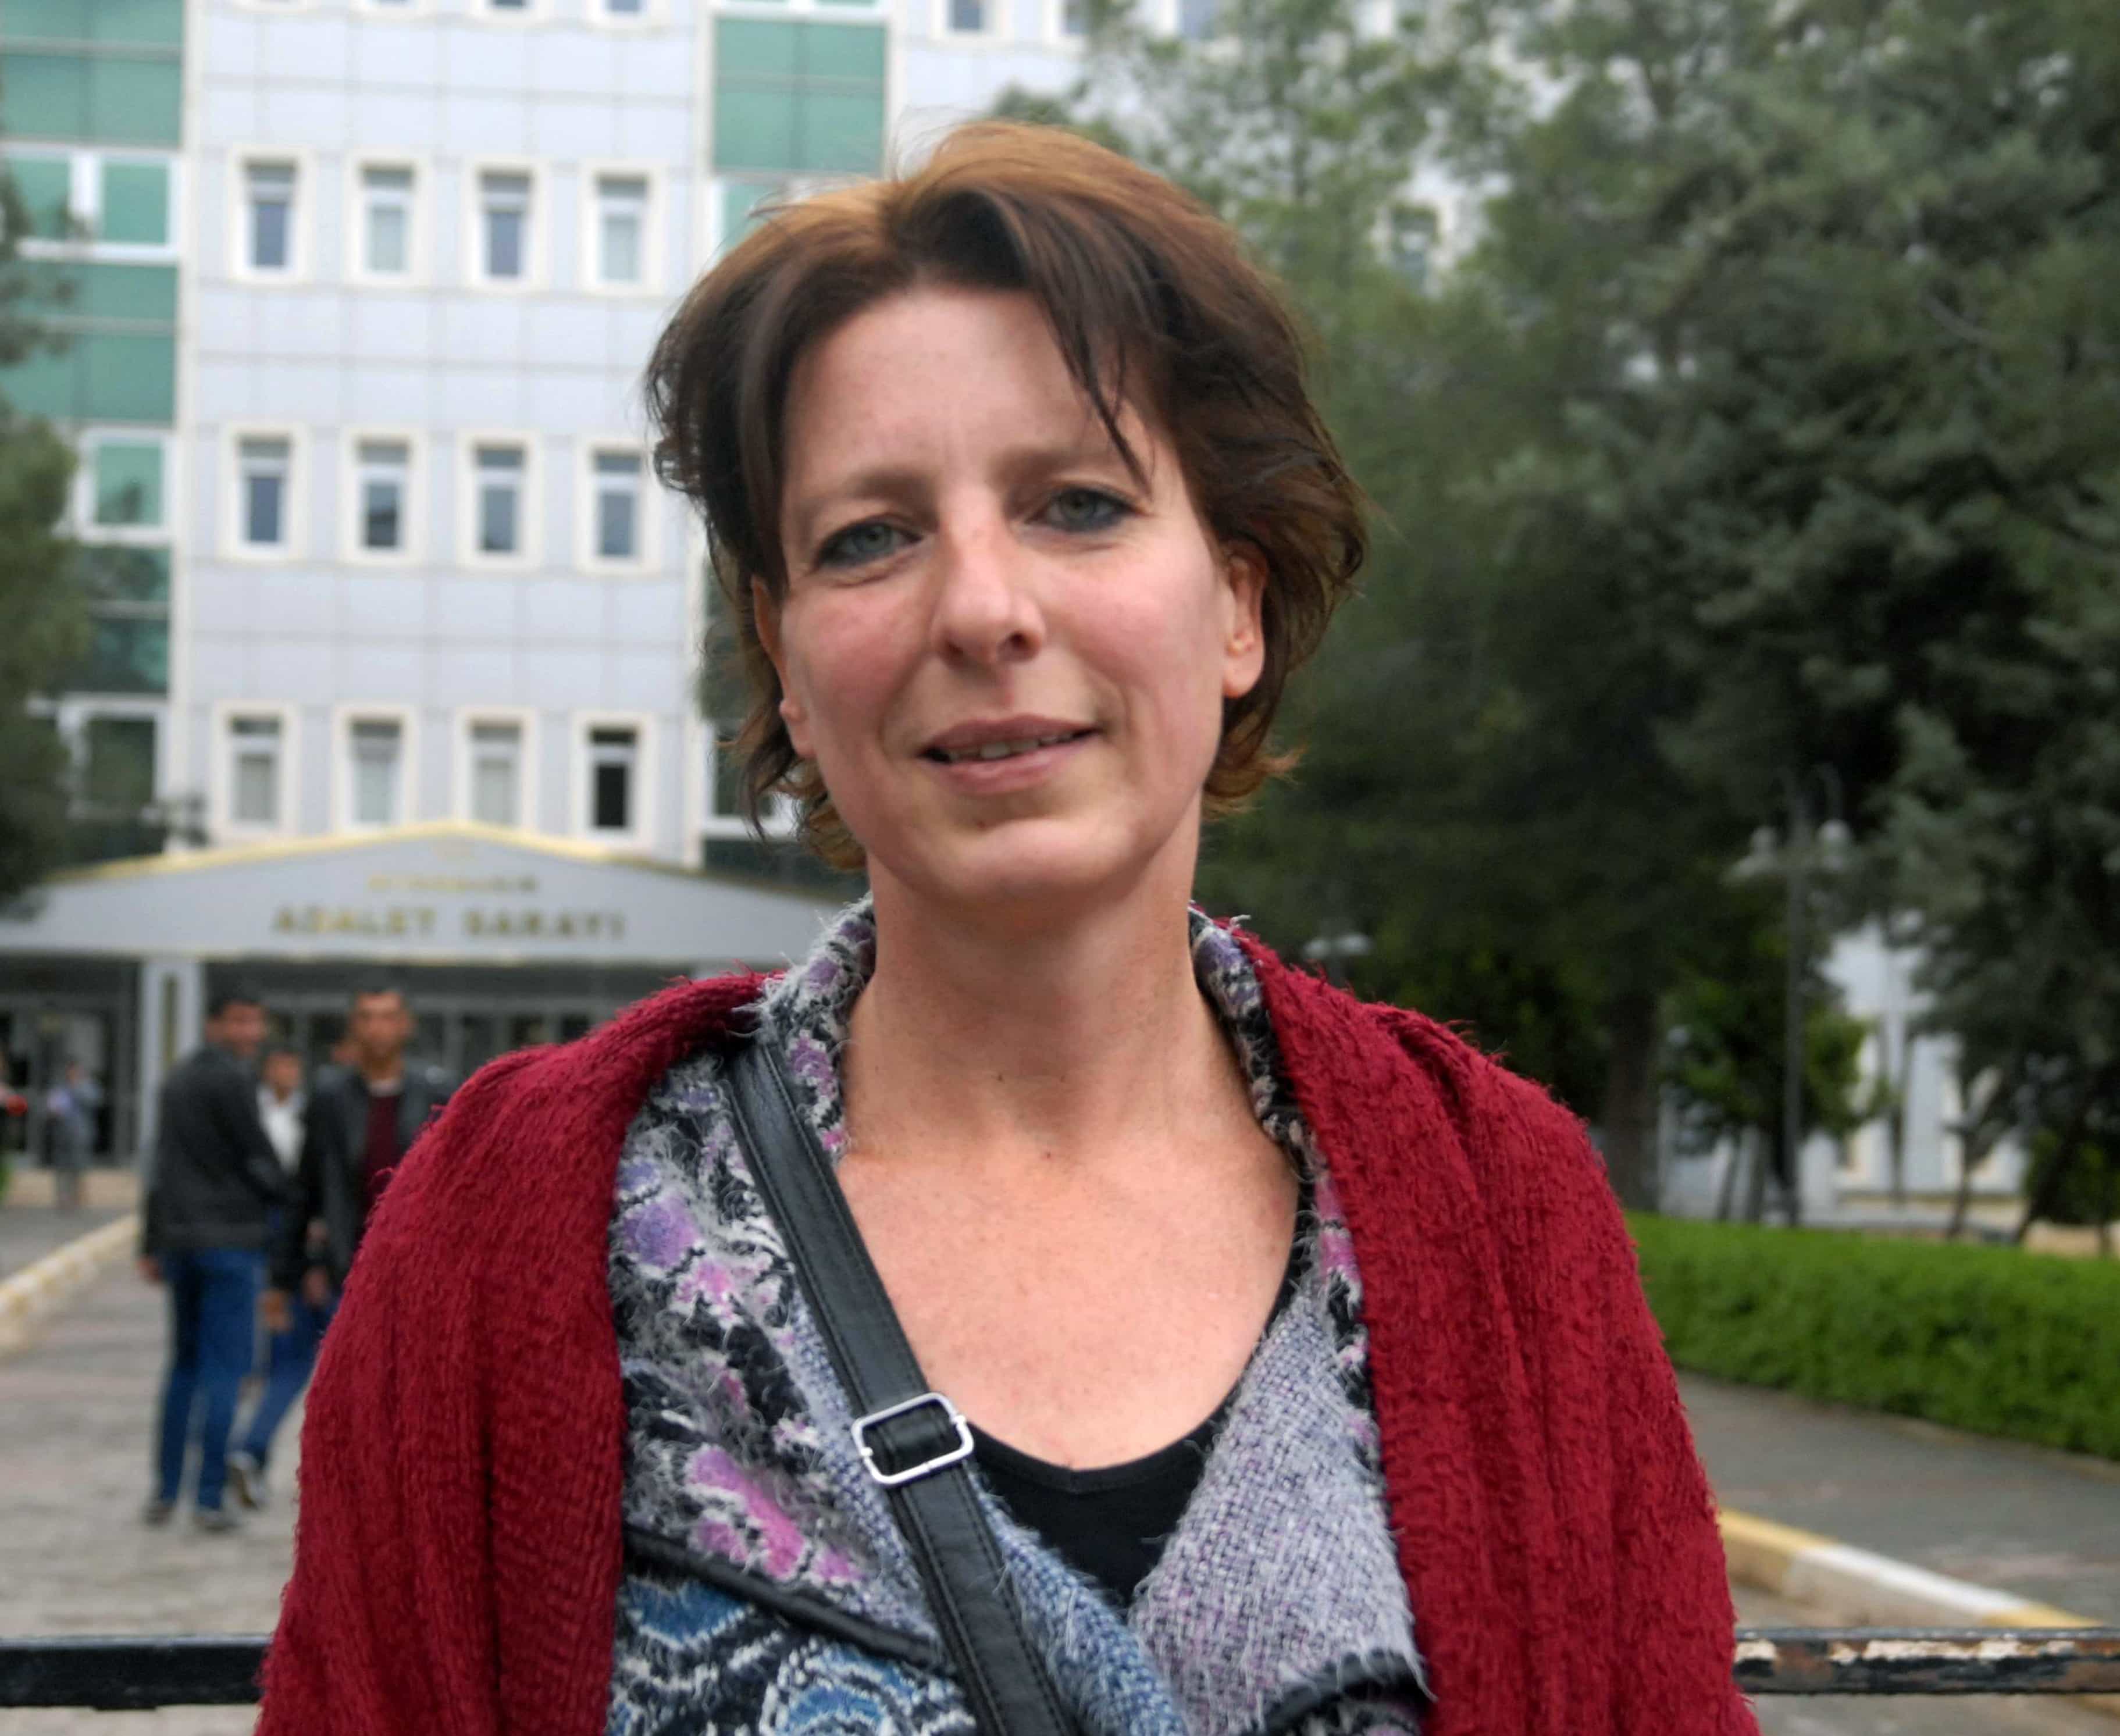 Freelance Dutch journalist Frederike Geerdink speaks to the media after her trial in Diyarbakir, Turkey, Monday, April 13, 2015, AP Photo/Mucahit Ceylan